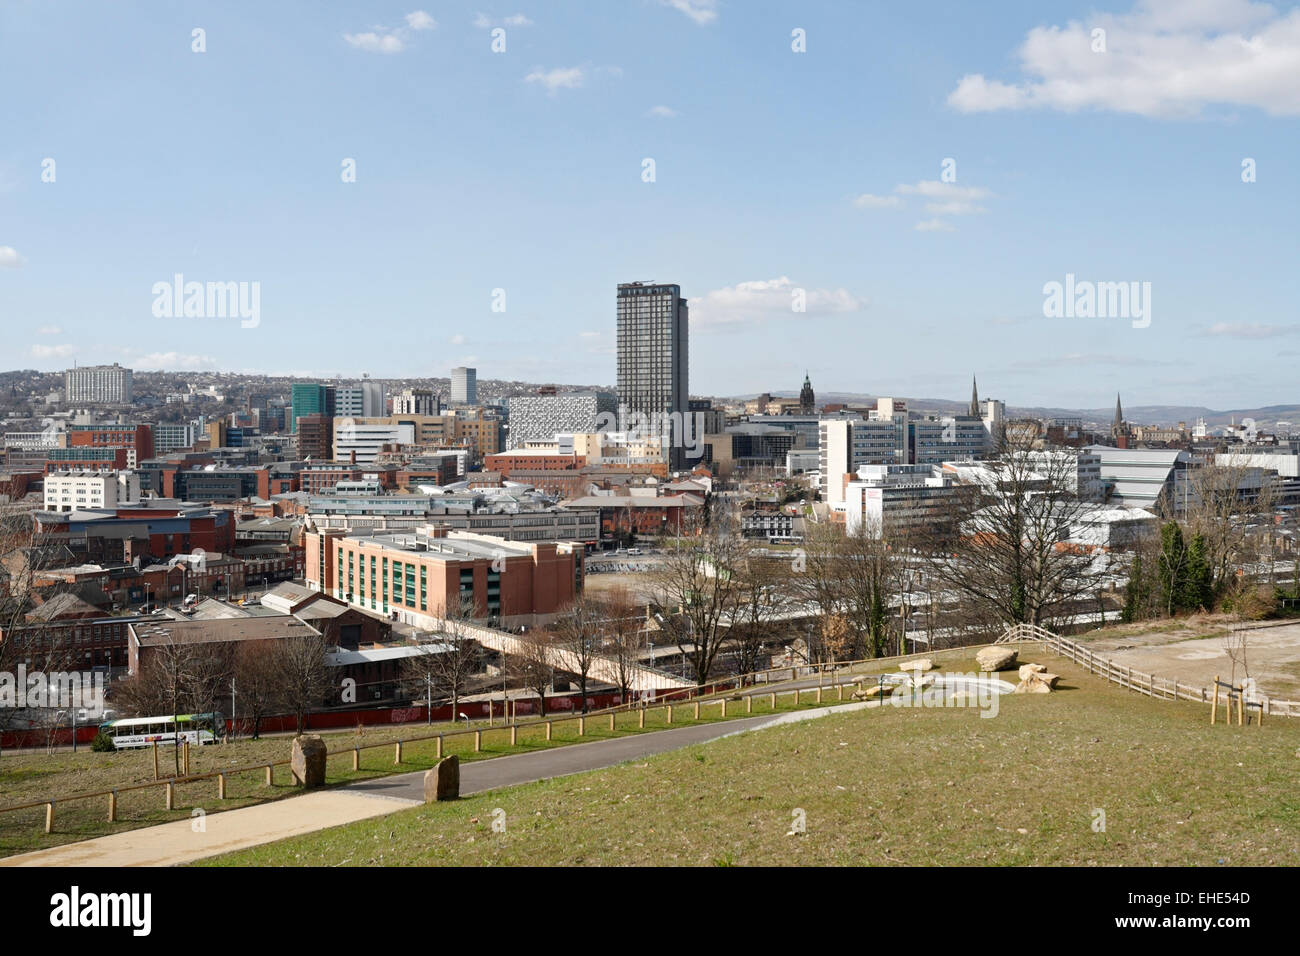 Sheffield city centre skyline, landscape scenic view, England UK Stock Photo